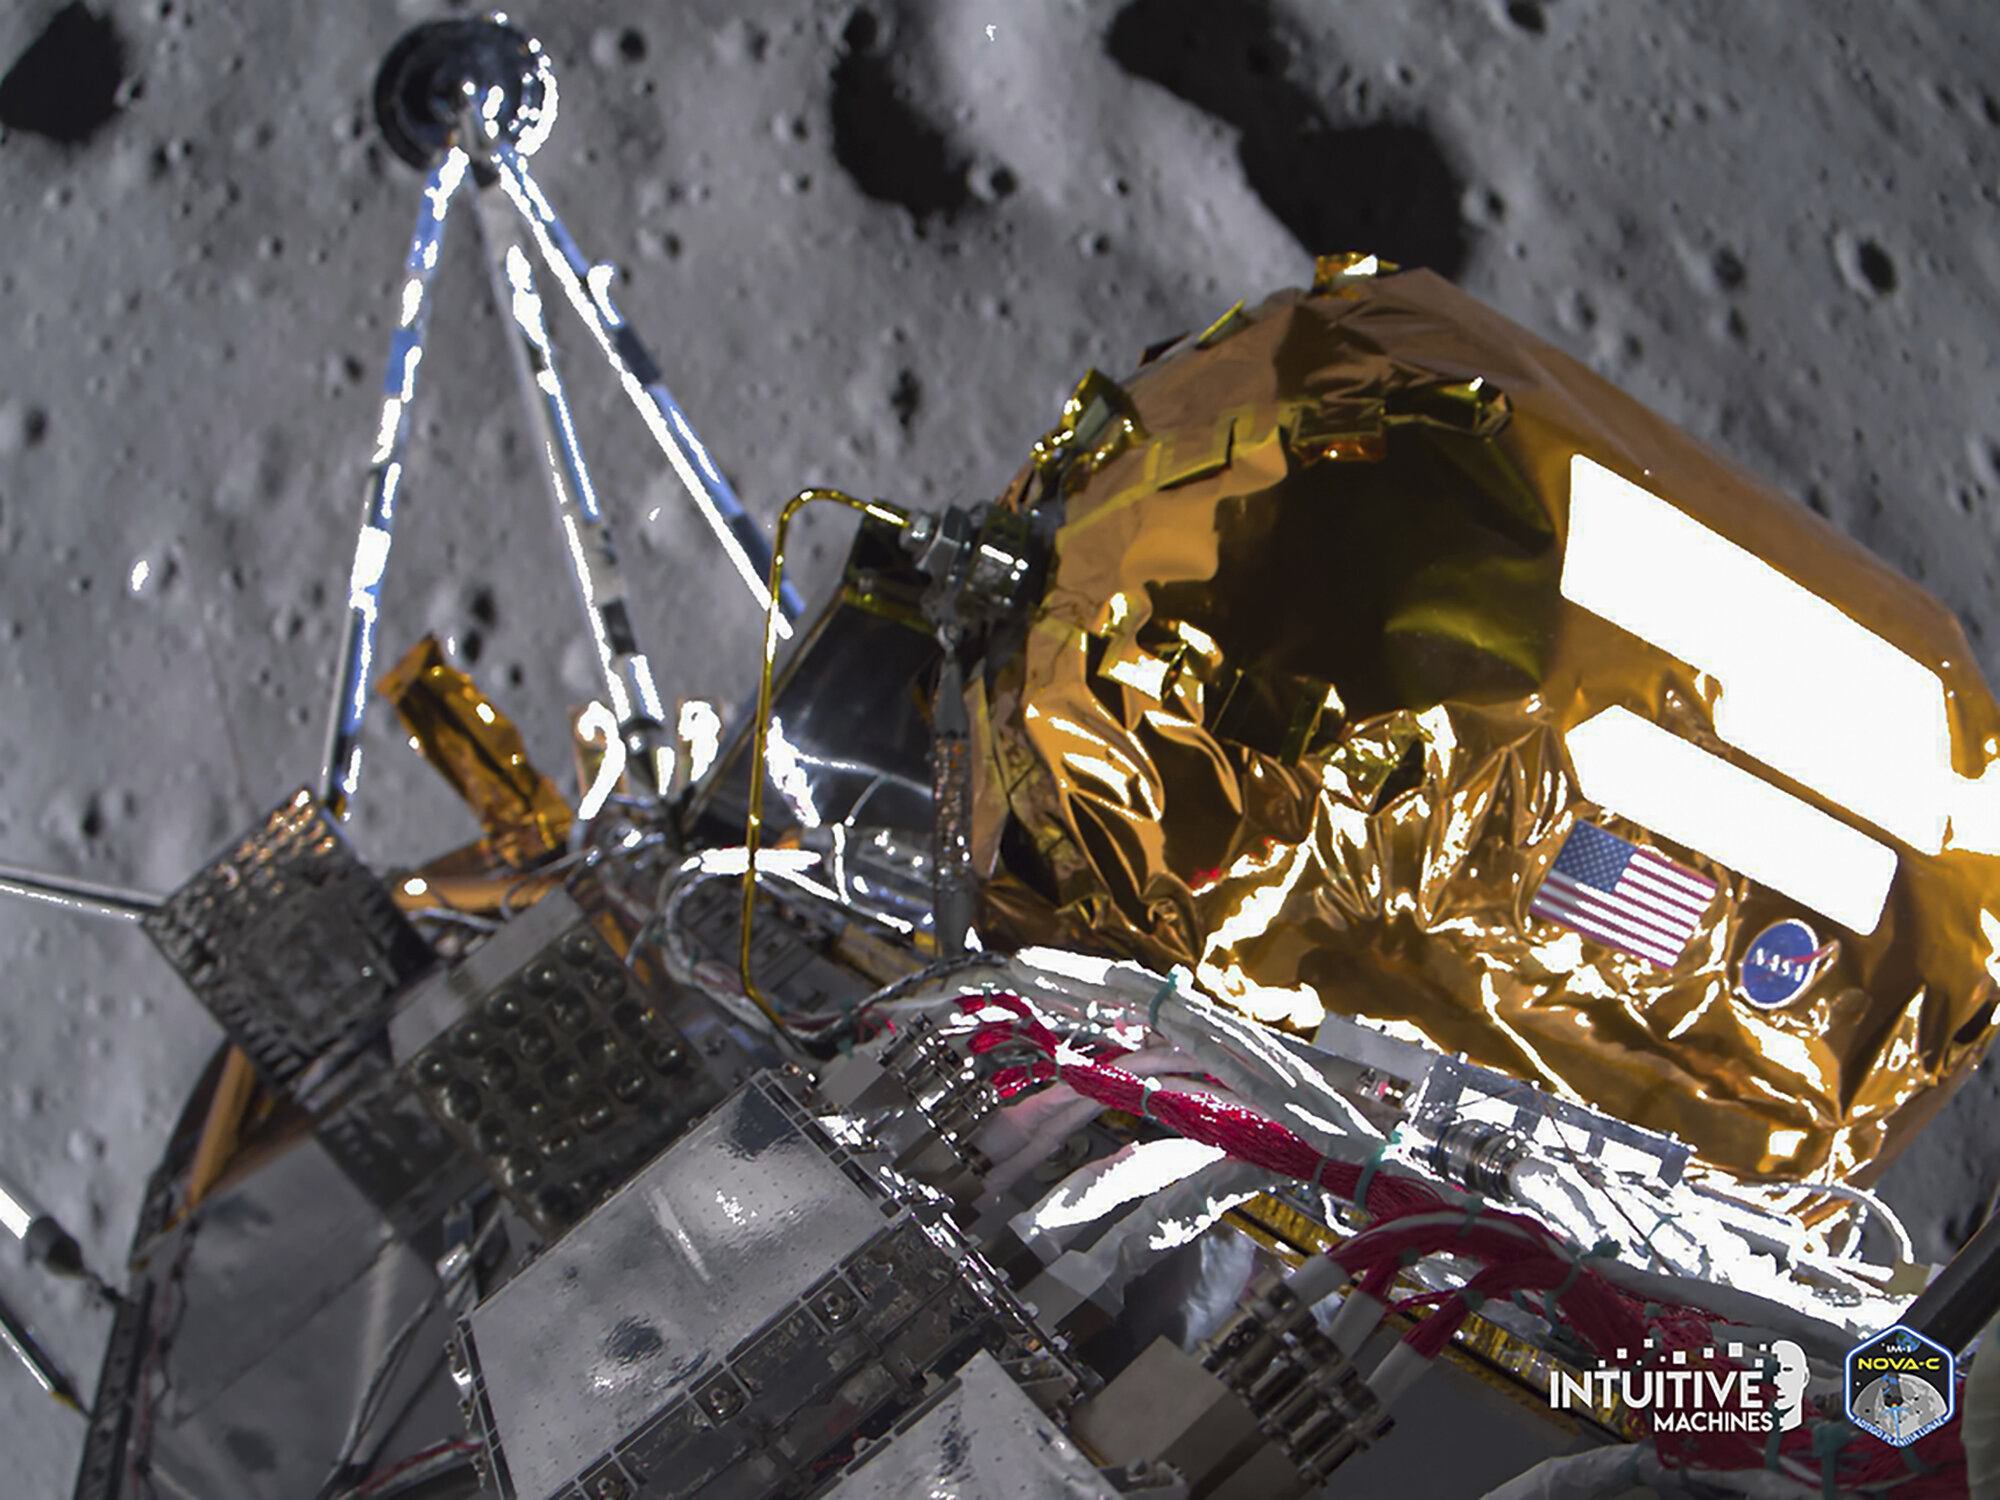 Ova druga fotografija prikazuje lander Odisej dok putuje iznad površine Mjeseca. Zasluge: Intuitive Machines. 